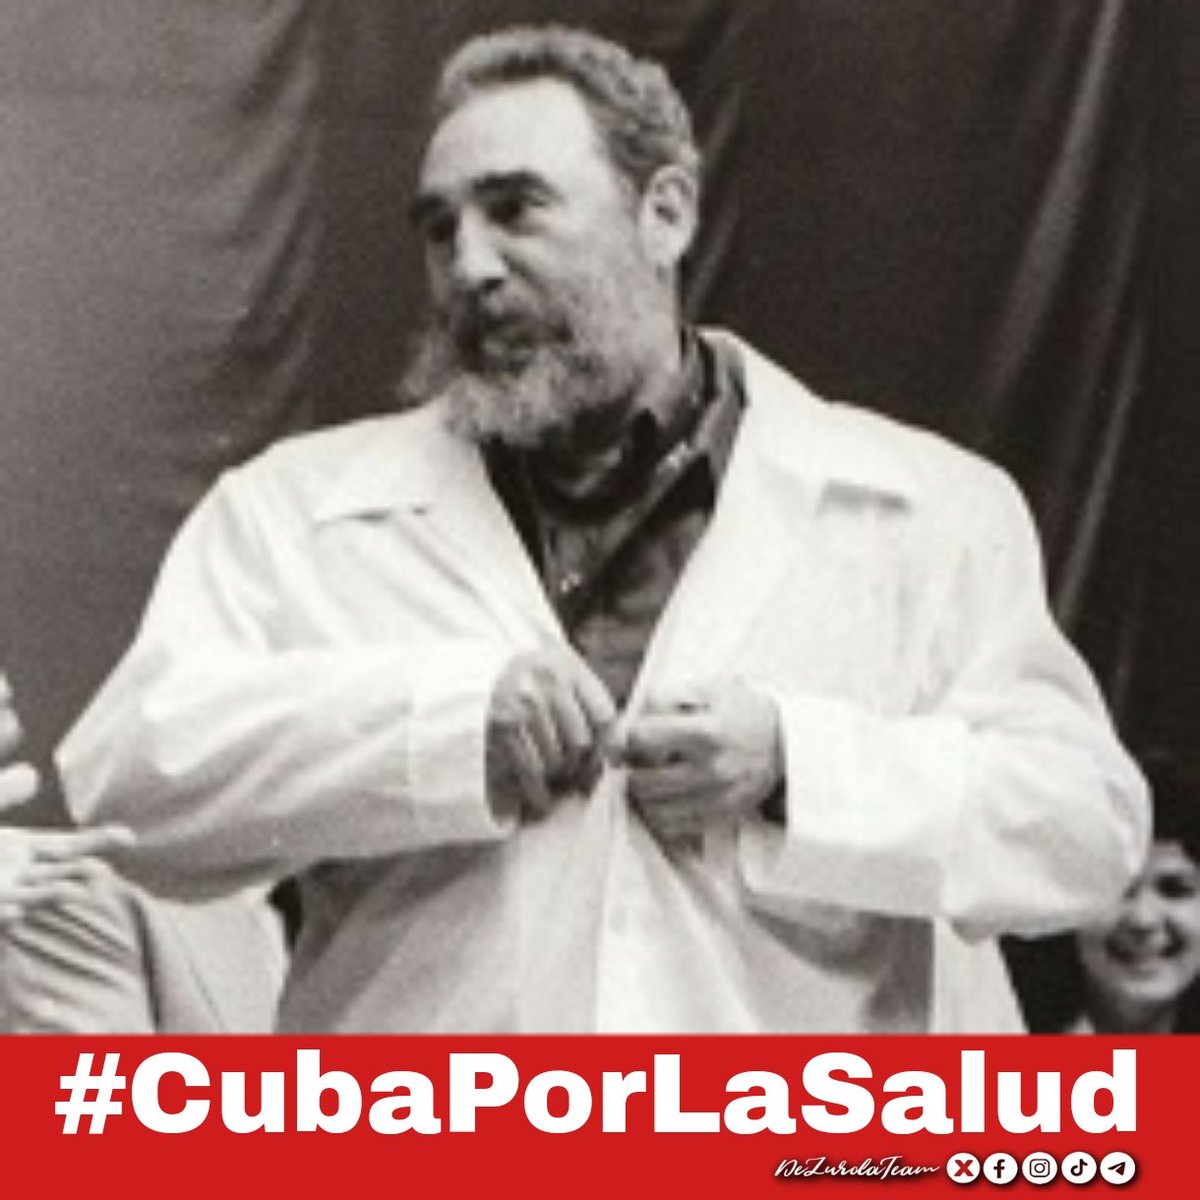 👉Atención #CubaPorLaSalud 🇨🇺| Está en Tendencia! 🚨 🎯 Vamos a doblegar al Algoritmo con ejemplos de la Medicina Cubana en el mundo. #DeZurdaTeam ¡Empiezo yo: Médicos y no Bombas!